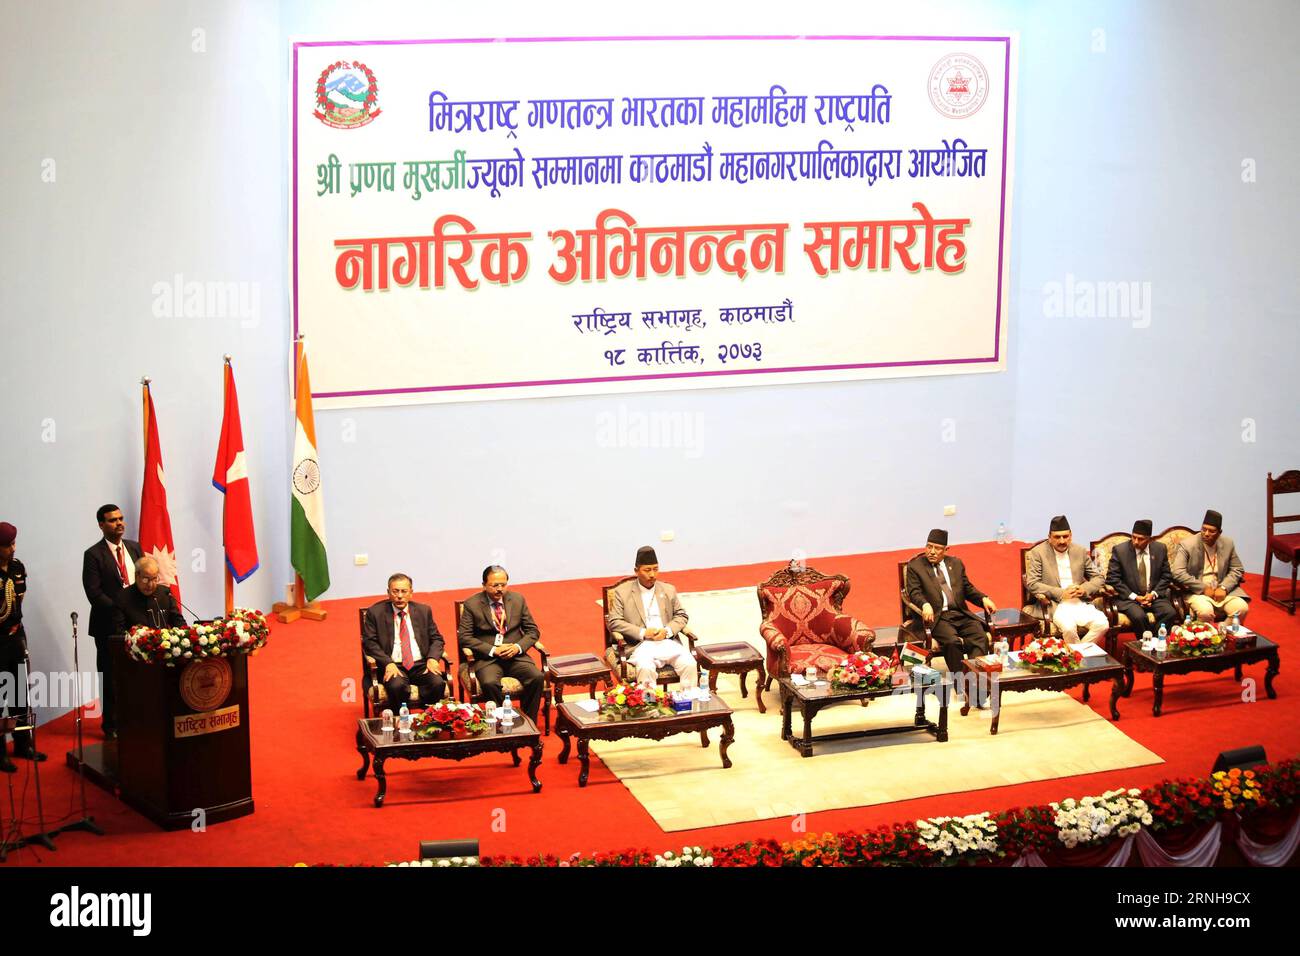 (161103) -- KATMANDOU, le 3 novembre 2016 -- le président indien Pranab Mukherjee (à gauche) s'adresse à une réception civique organisée pour féliciter le président en visite par la ville métropolitaine de Katmandou (KMC) à Katmandou, capitale du Népal, le 3 novembre 2016. Le président indien Pranab Mukherjee est arrivé mercredi à Katmandou pour une visite d’État de trois jours au Népal à l’invitation de son homologue népalais Bidhya Devi Bhandari. (Sxk) NÉPAL-KATMANDOU-PRÉSIDENT INDIEN VISITE-RÉCEPTION CIVIQUE SunilxSharma PUBLICATIONxNOTxINxCHN Katmandou nov 3 2016 le Président indien Pranab Mukherjee s adresse à une réception civique Banque D'Images